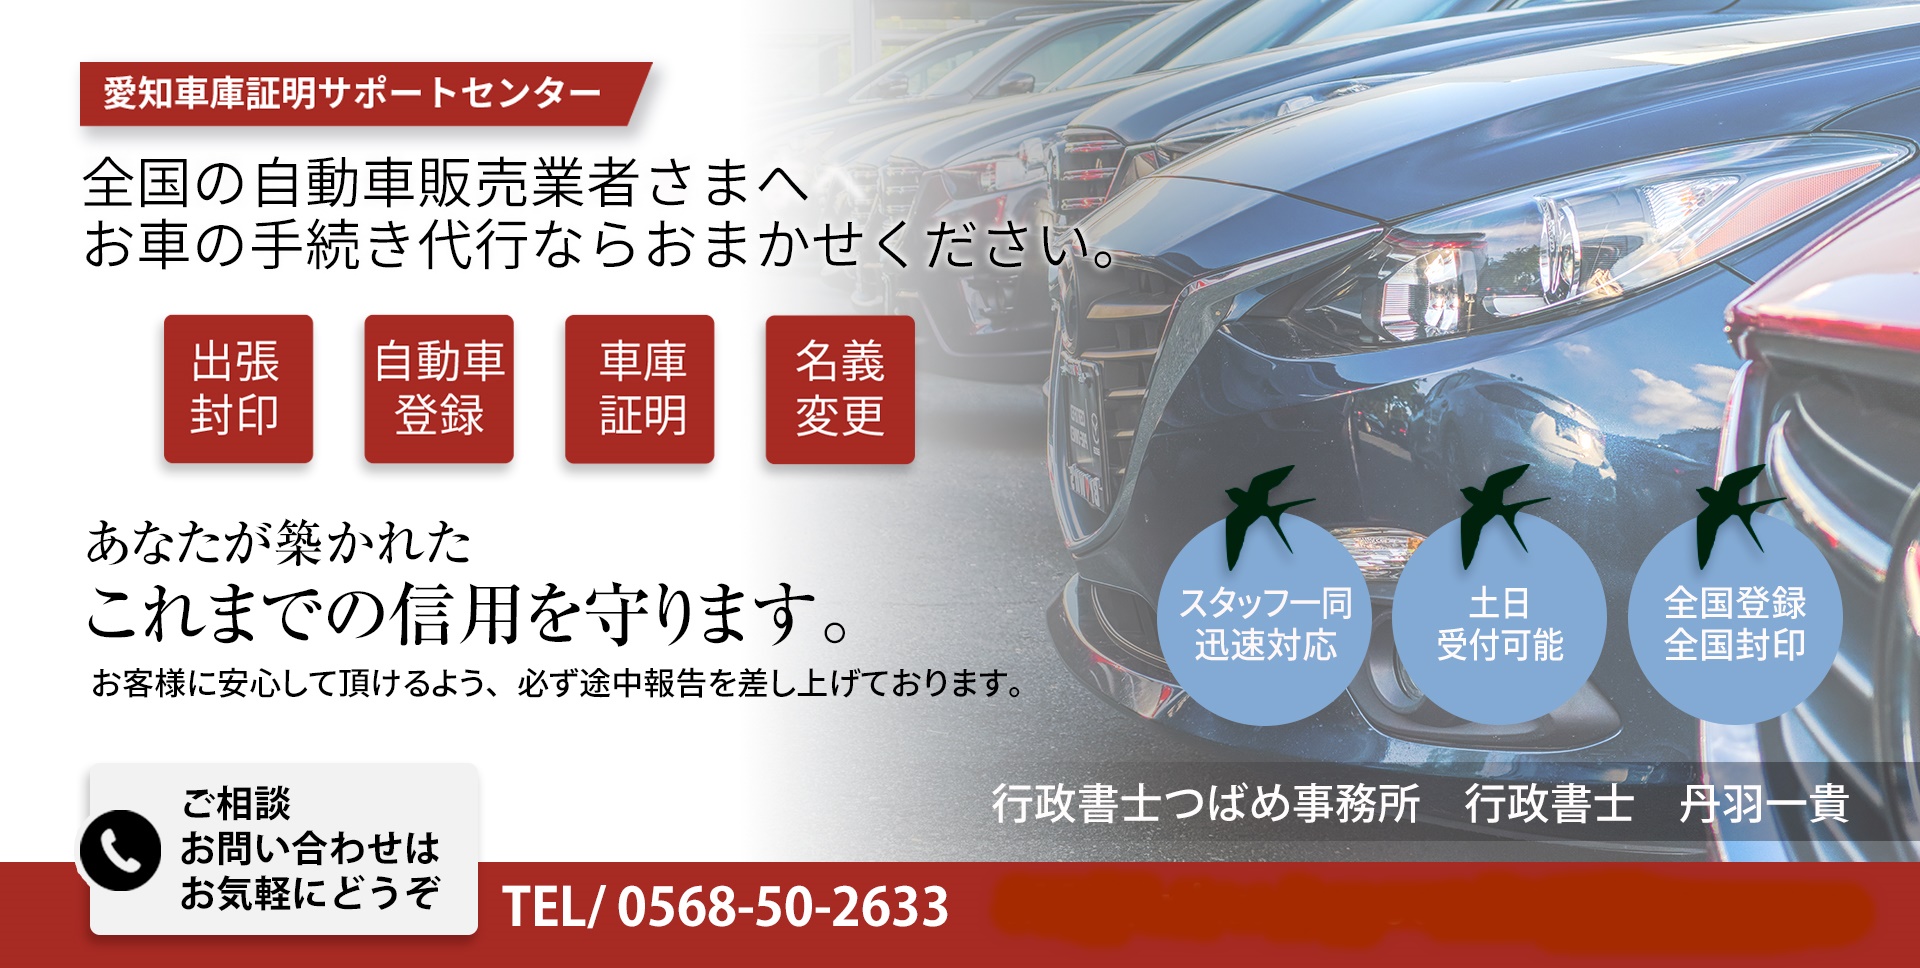 名古屋市昭和区の車庫証明 | 行政書士つばめ事務所が昭和警察署の車庫証明を代行します